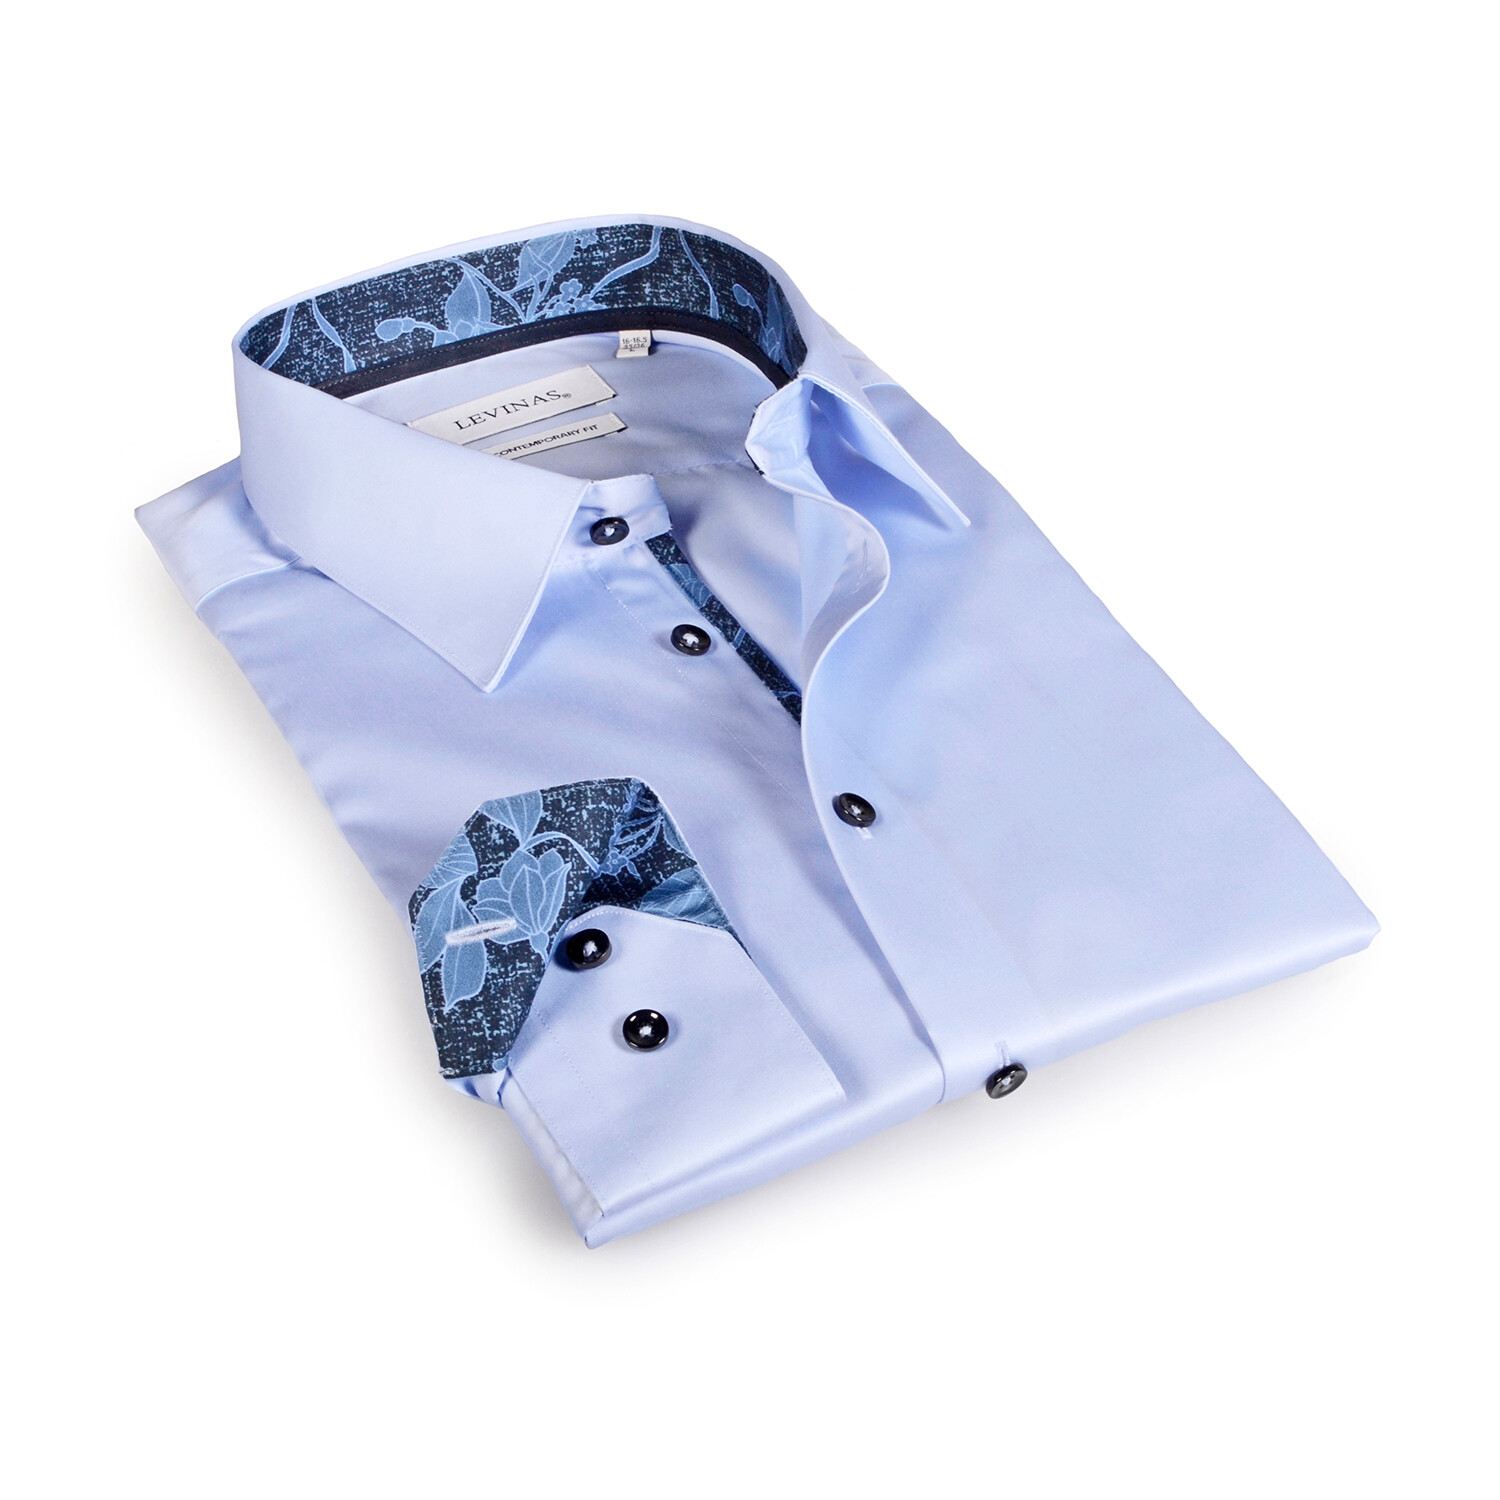 Contemporary Fit Dress Shirt // Light Blue with Navy Trim (S) - Levinas ...